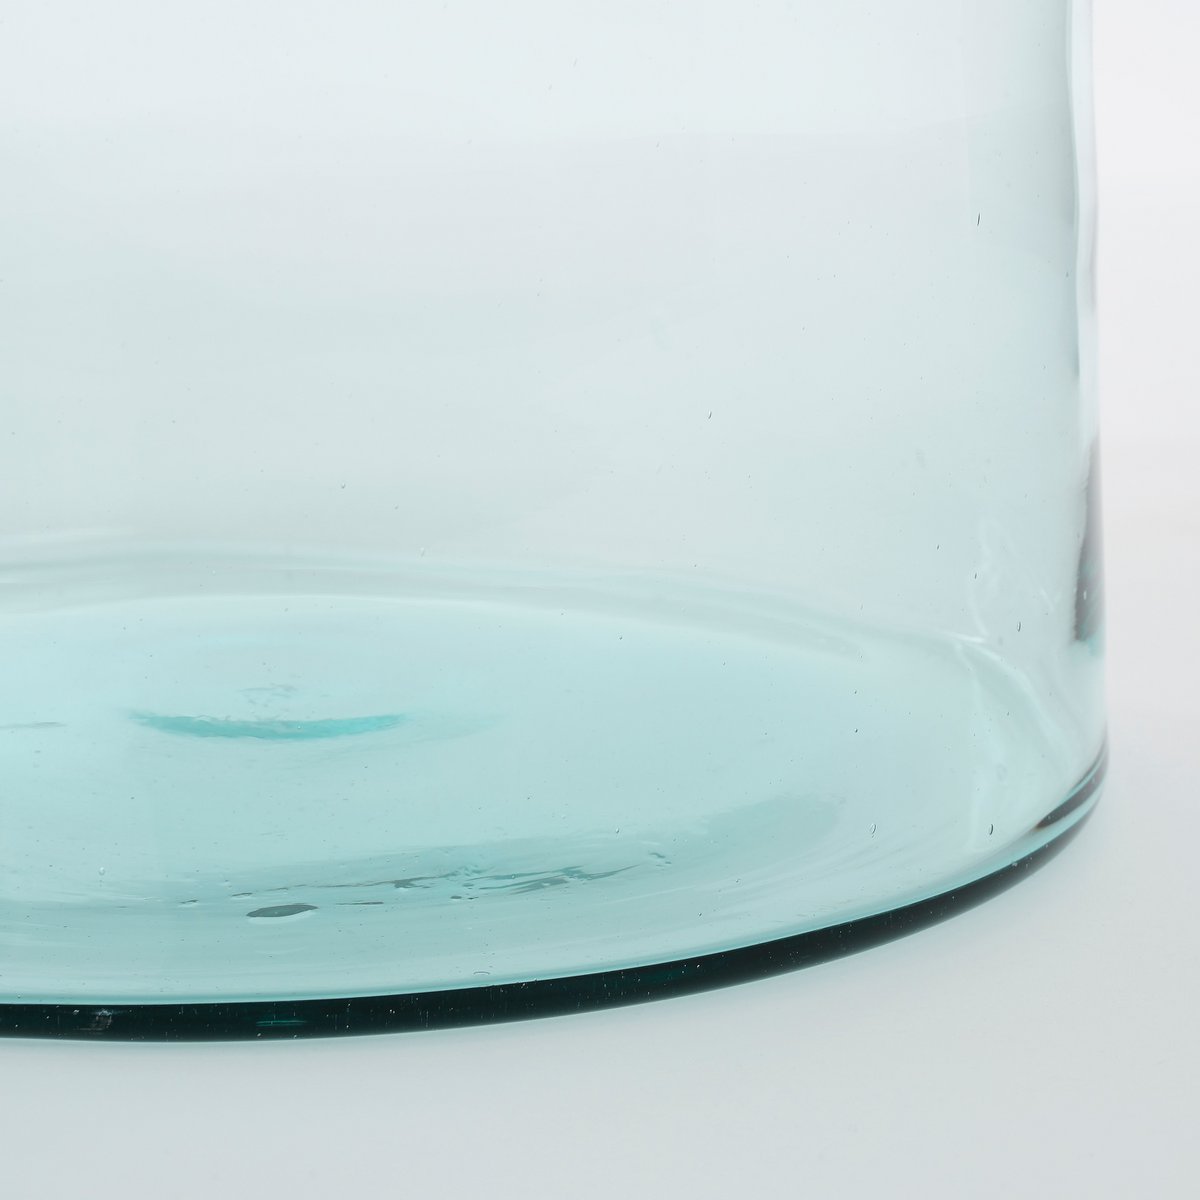 Florine Flaschenvase – H58 x Ø26 cm – Recyceltes Glas – Transparent